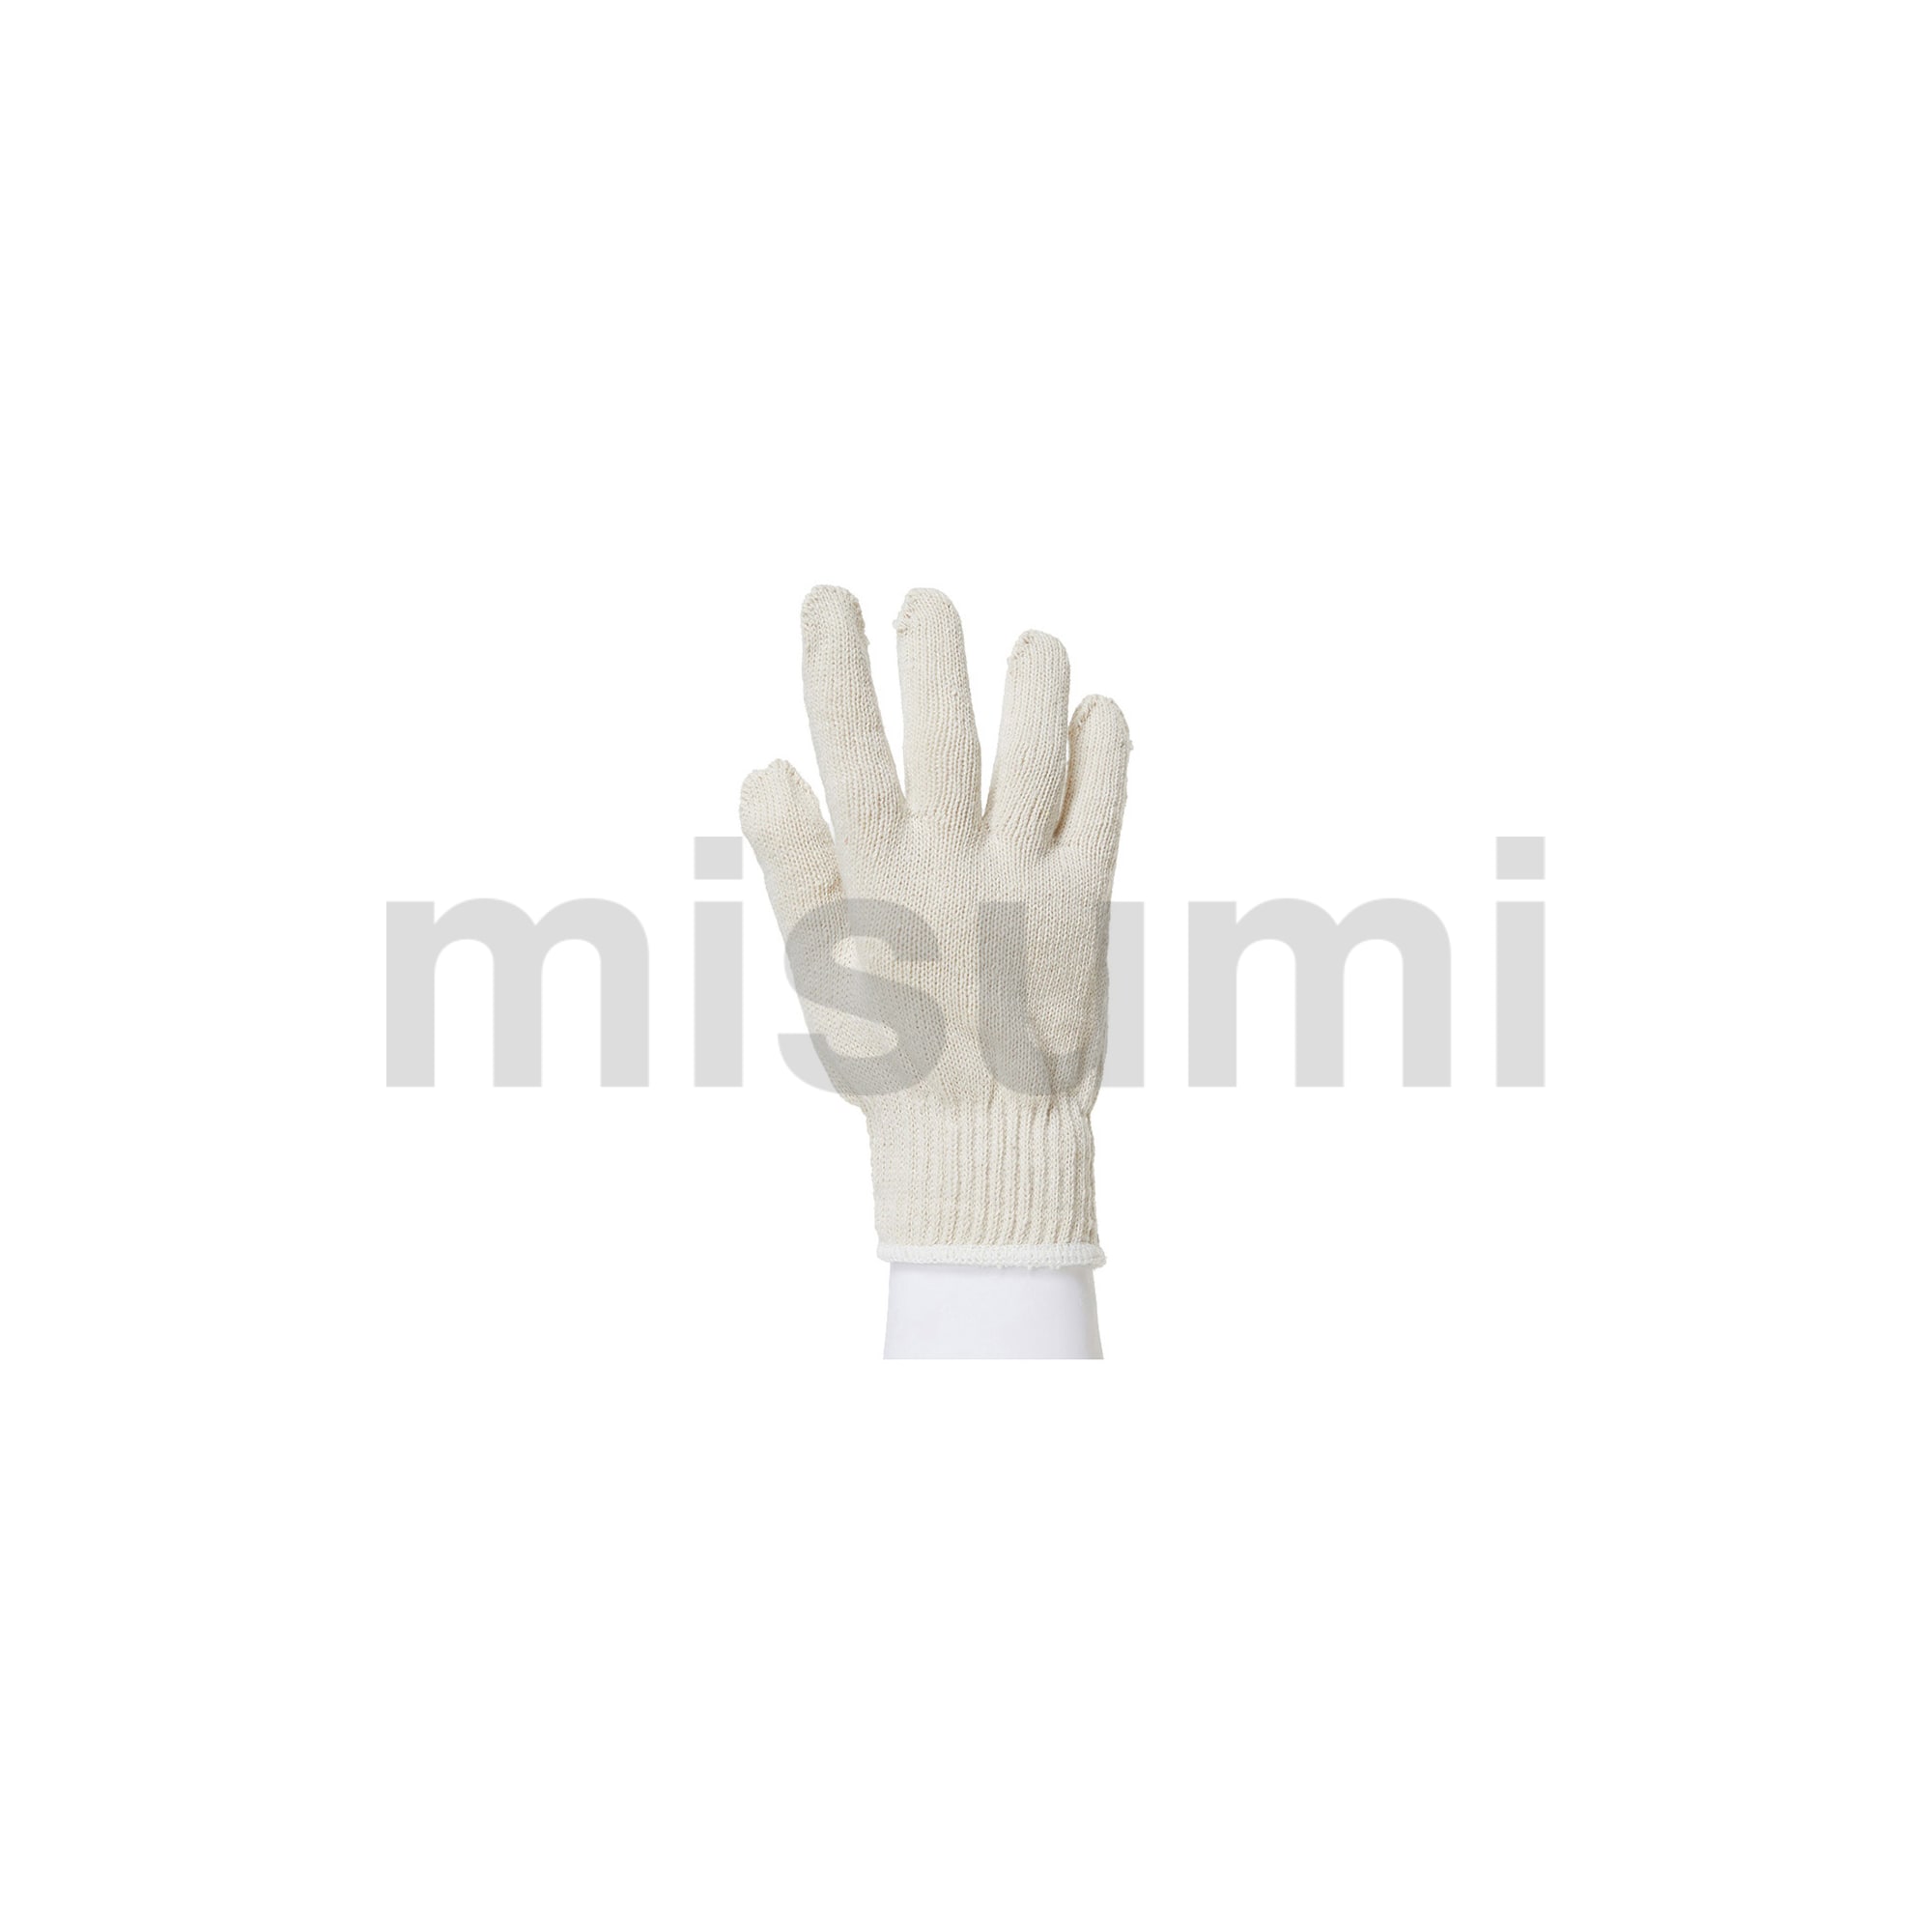 米思米MISUMI600g纱线手套符合RoHS10指令要求_图片/参数/价格 